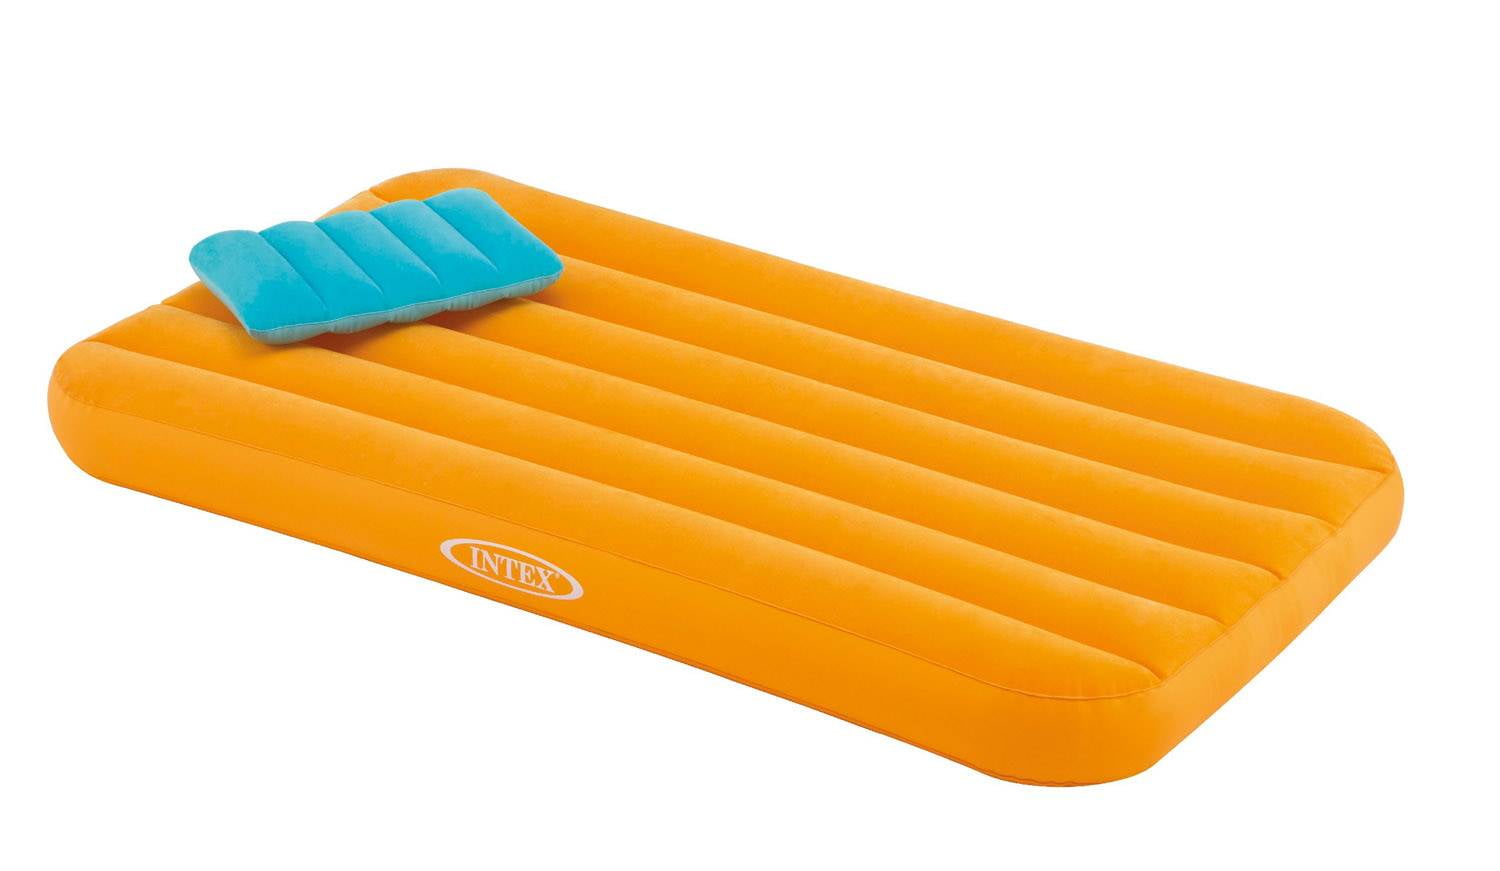 Intex Cozy Soft Kids Orange Inflatable Air Bed Mattress 62"L x 34.50"W 